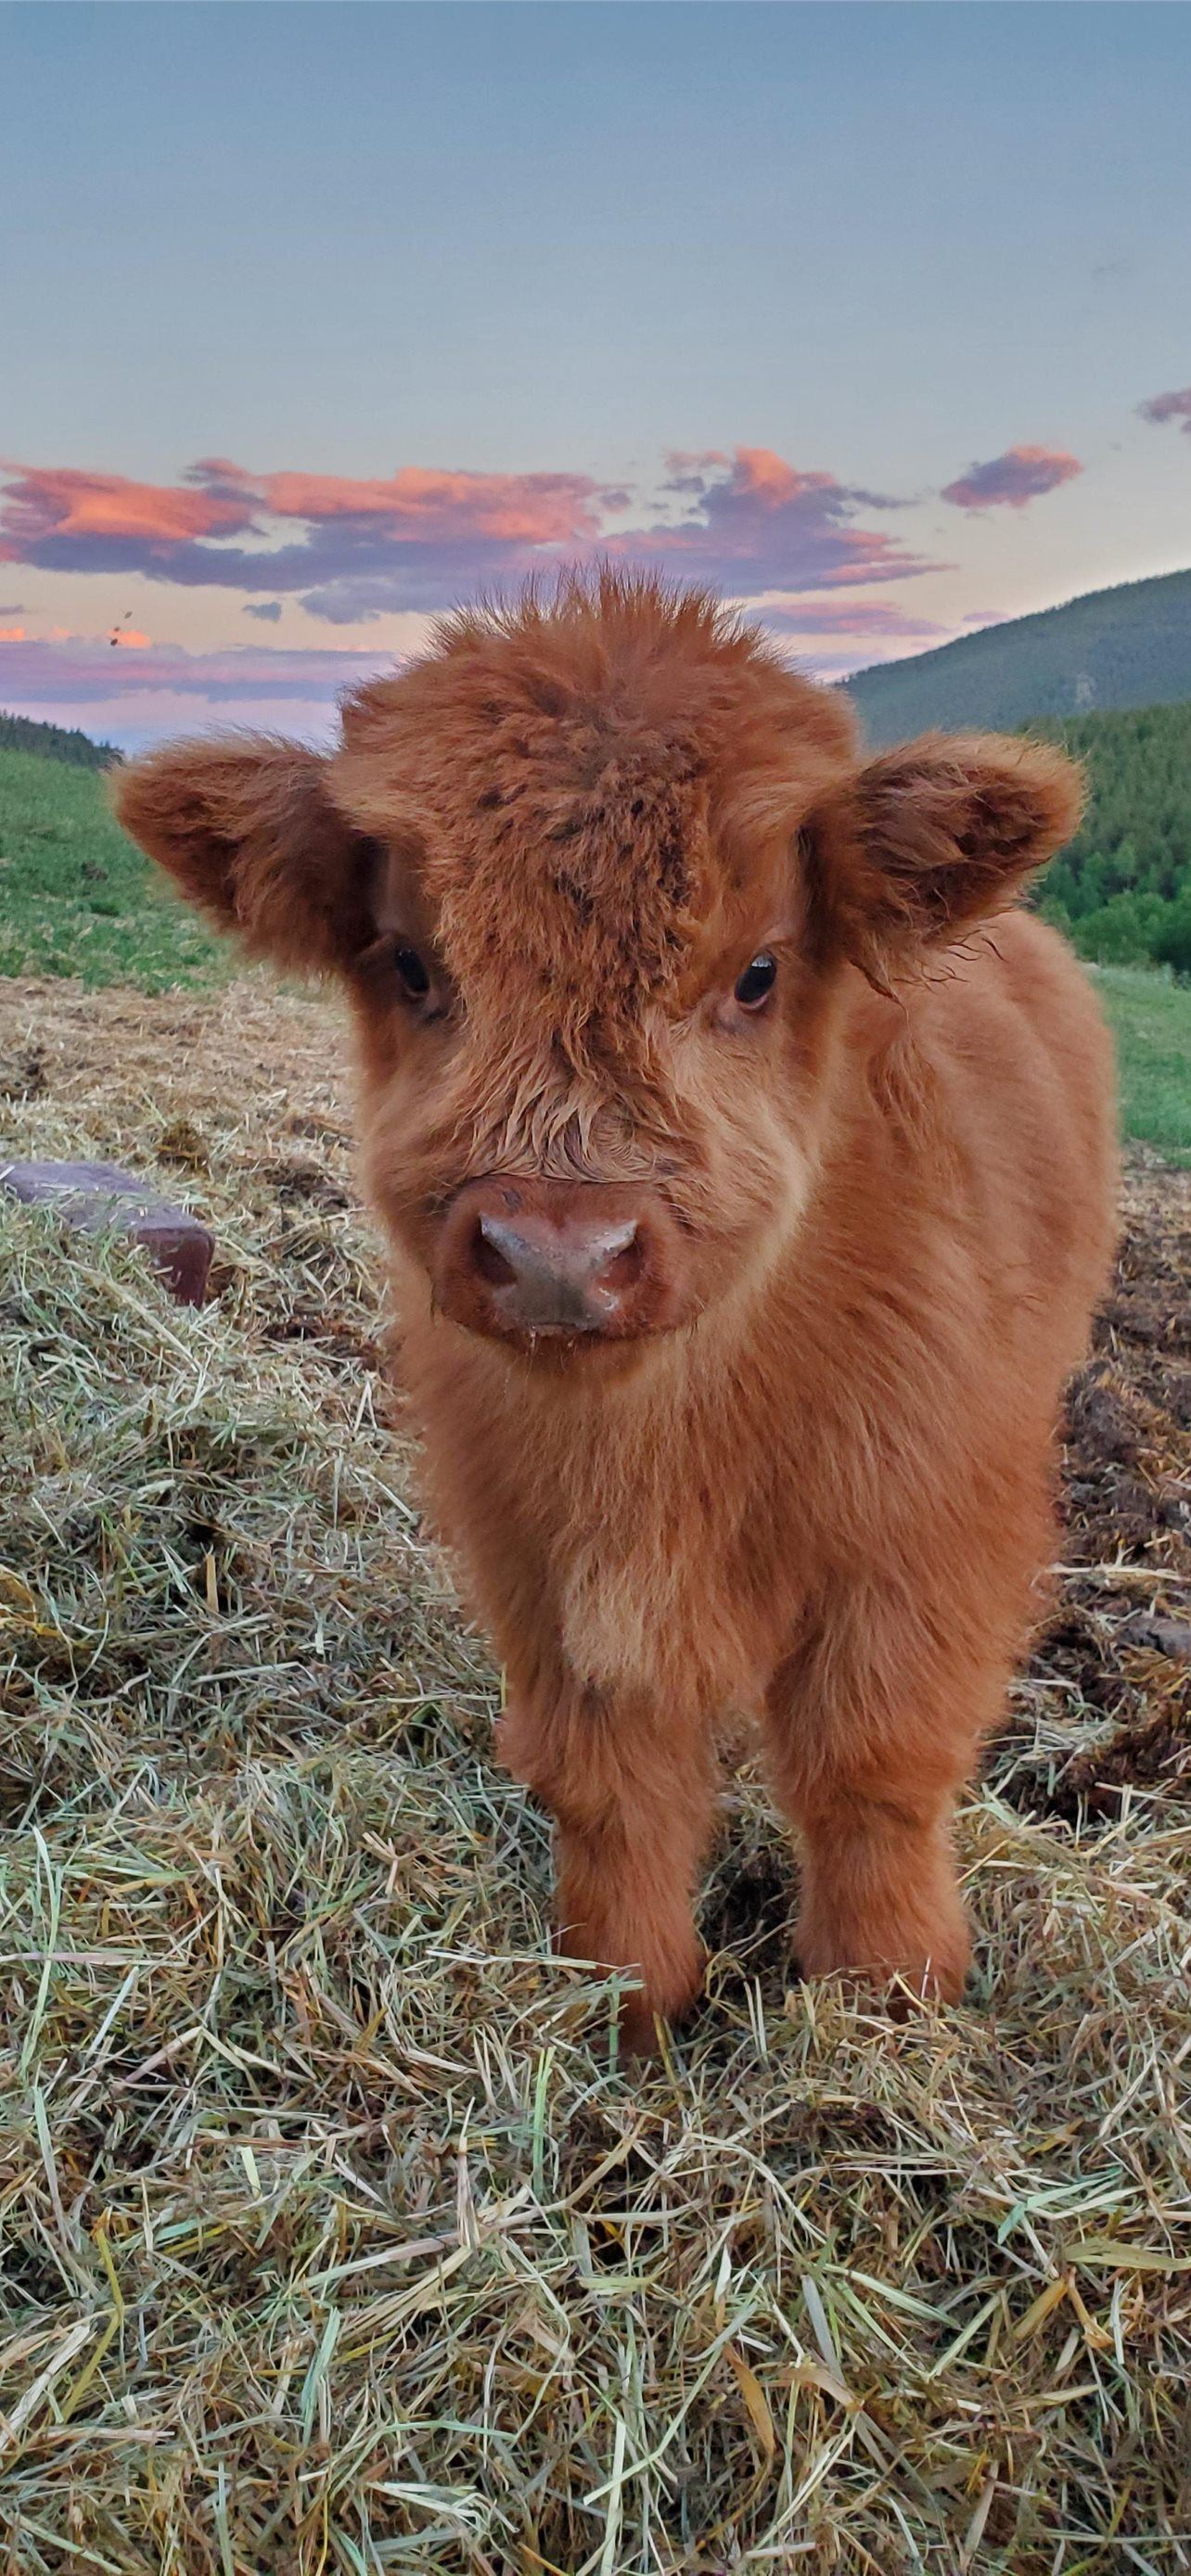 Sản phẩm hình nền động vật luôn được yêu thích, nhất là những hình nền bò Highland. Hãy xem hình để chứng kiến sự độc đáo của chúng!